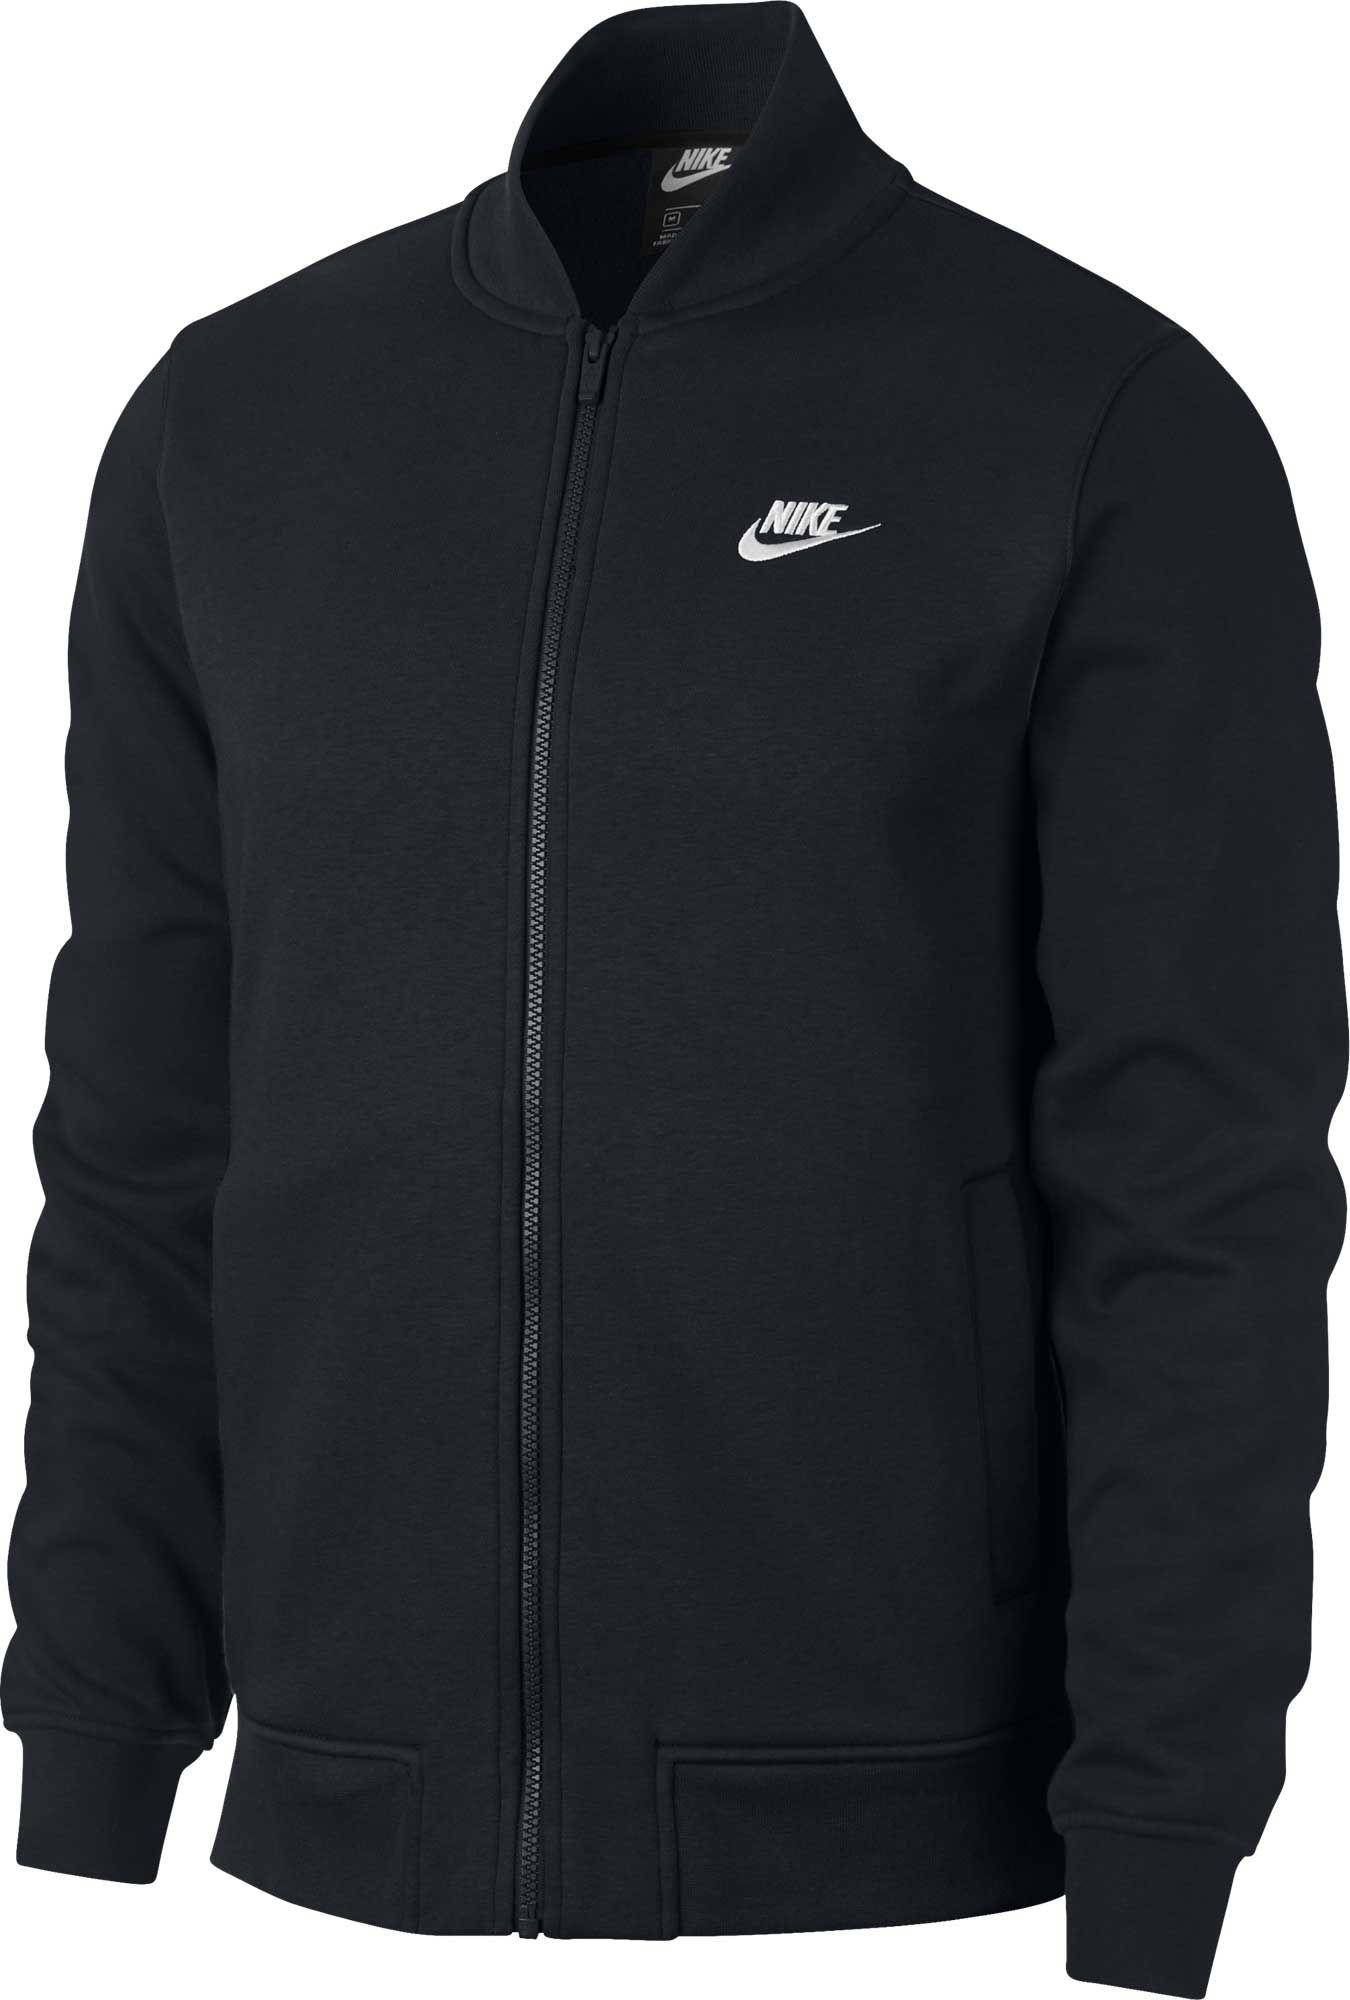 Nike Fleece Sportswear Club Bomber Jacket in Black/White (Black) for ...